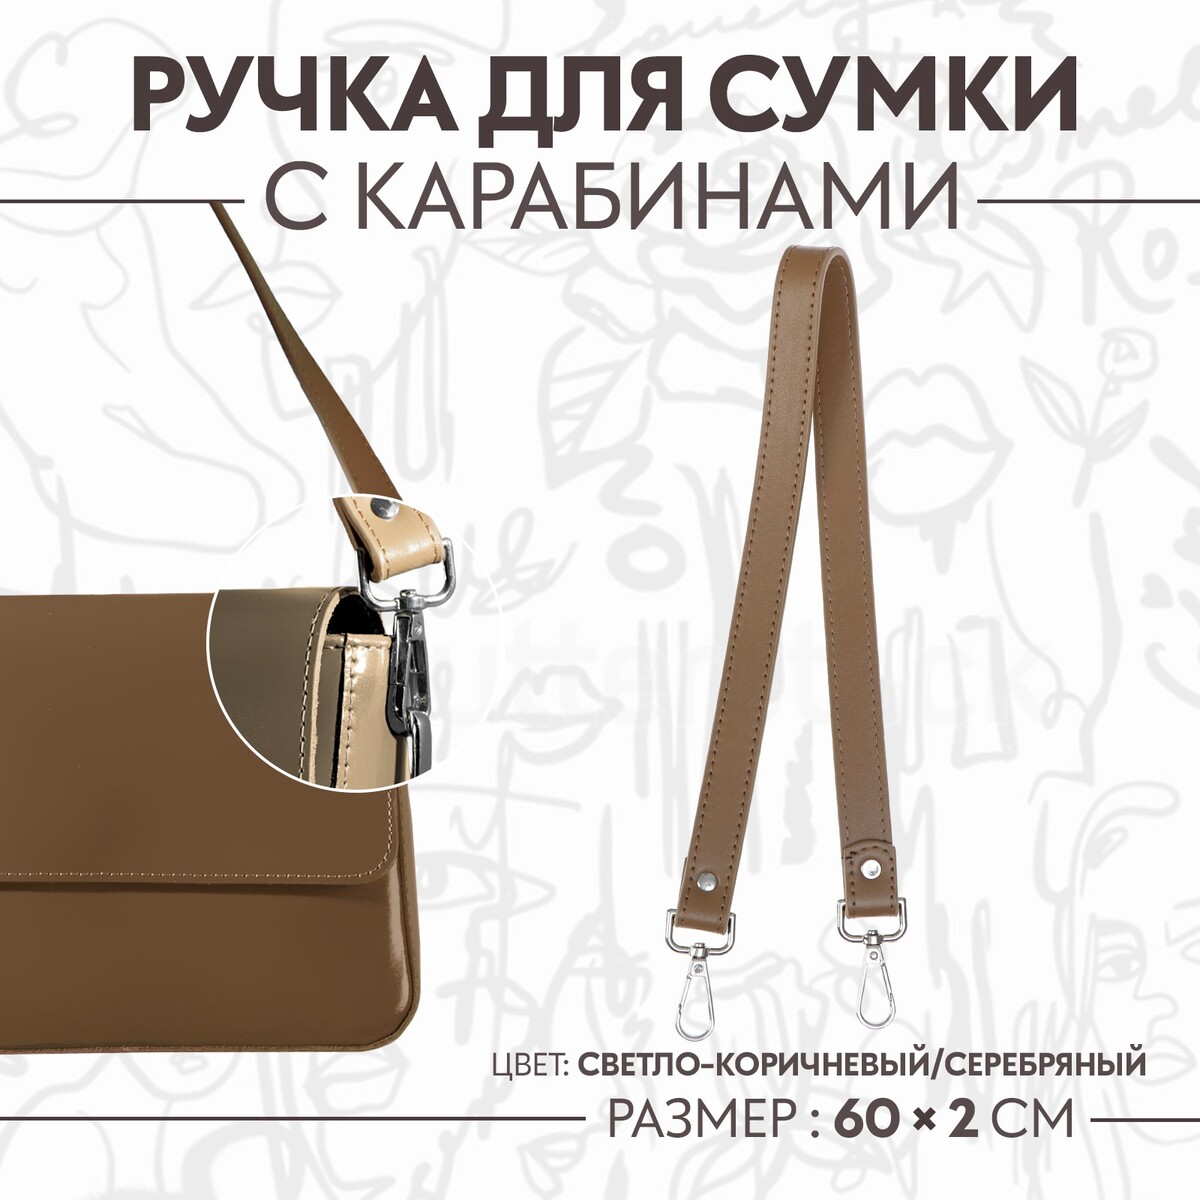 Ручка для сумки, с карабинами, 60 × 2 см, цвет светло-коричневый ручка рейлинг cappio м о 96 мм коричневый